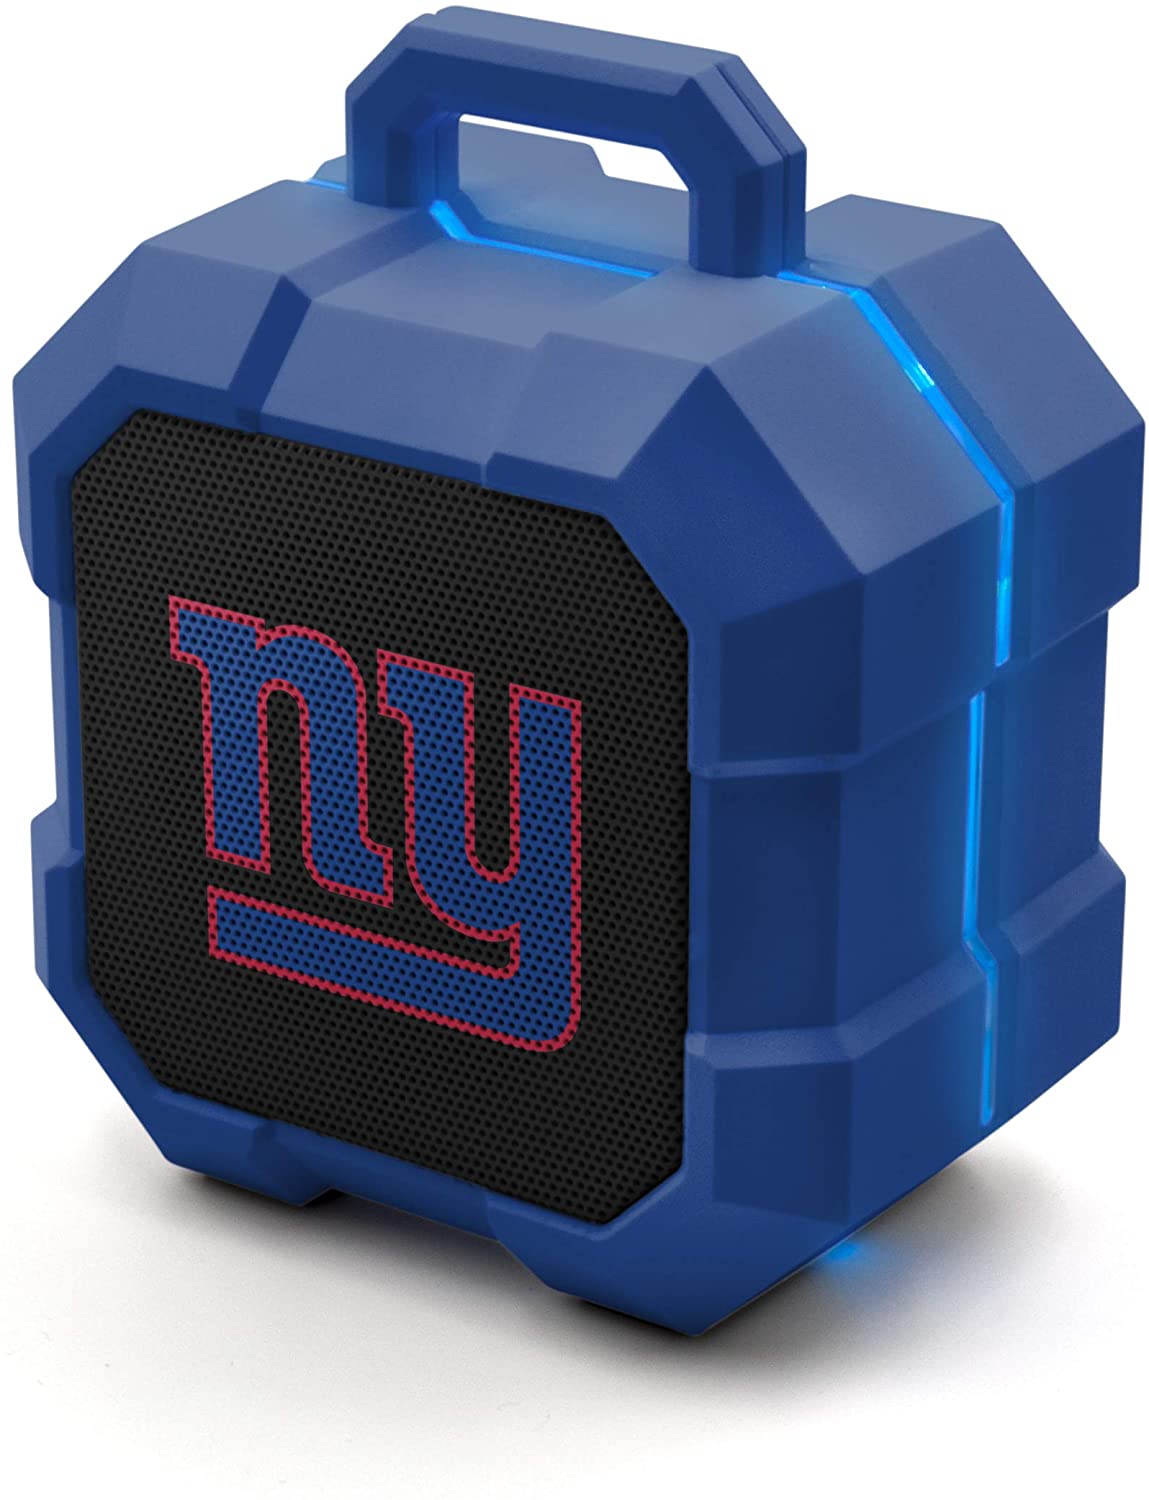 New York Giants Shockbox LED Wireless Bluetooth Speaker by Soar